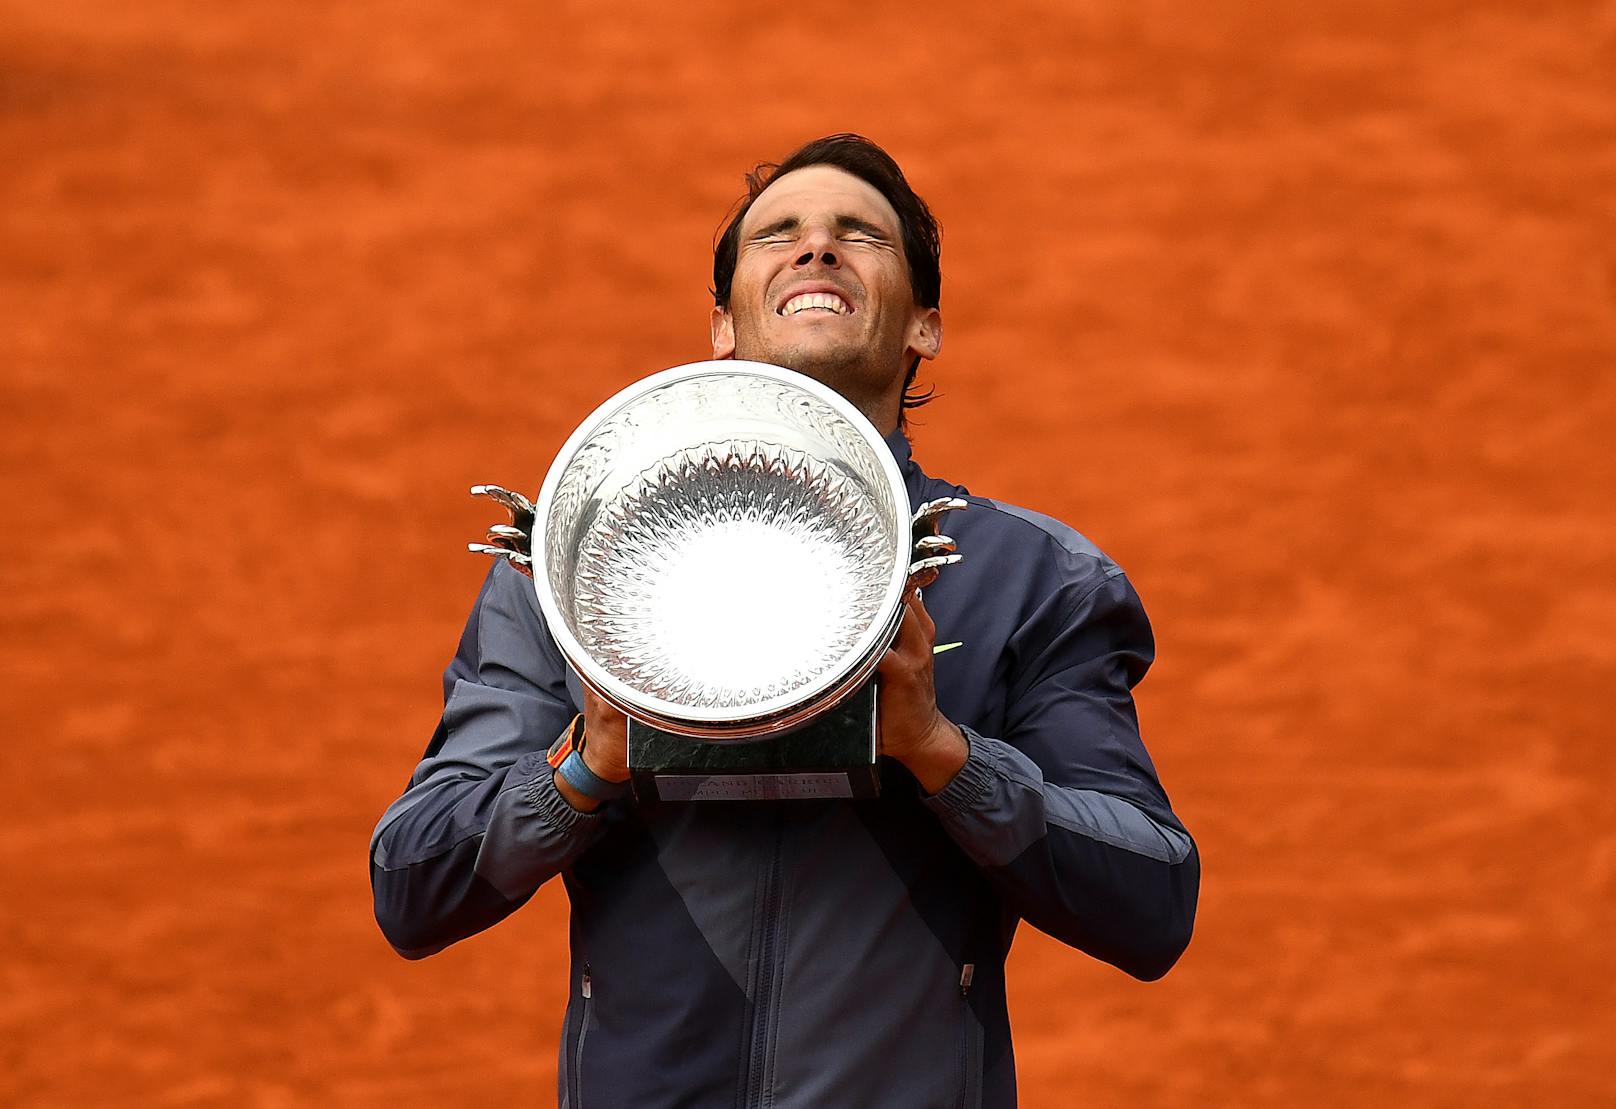 Rafael Nadal hat die French Open 2019 gewonnen. Der Spanier setzte sich im Finale wie im vergangenen Jahr gegen den Österreicher Dominic Thiem durch.